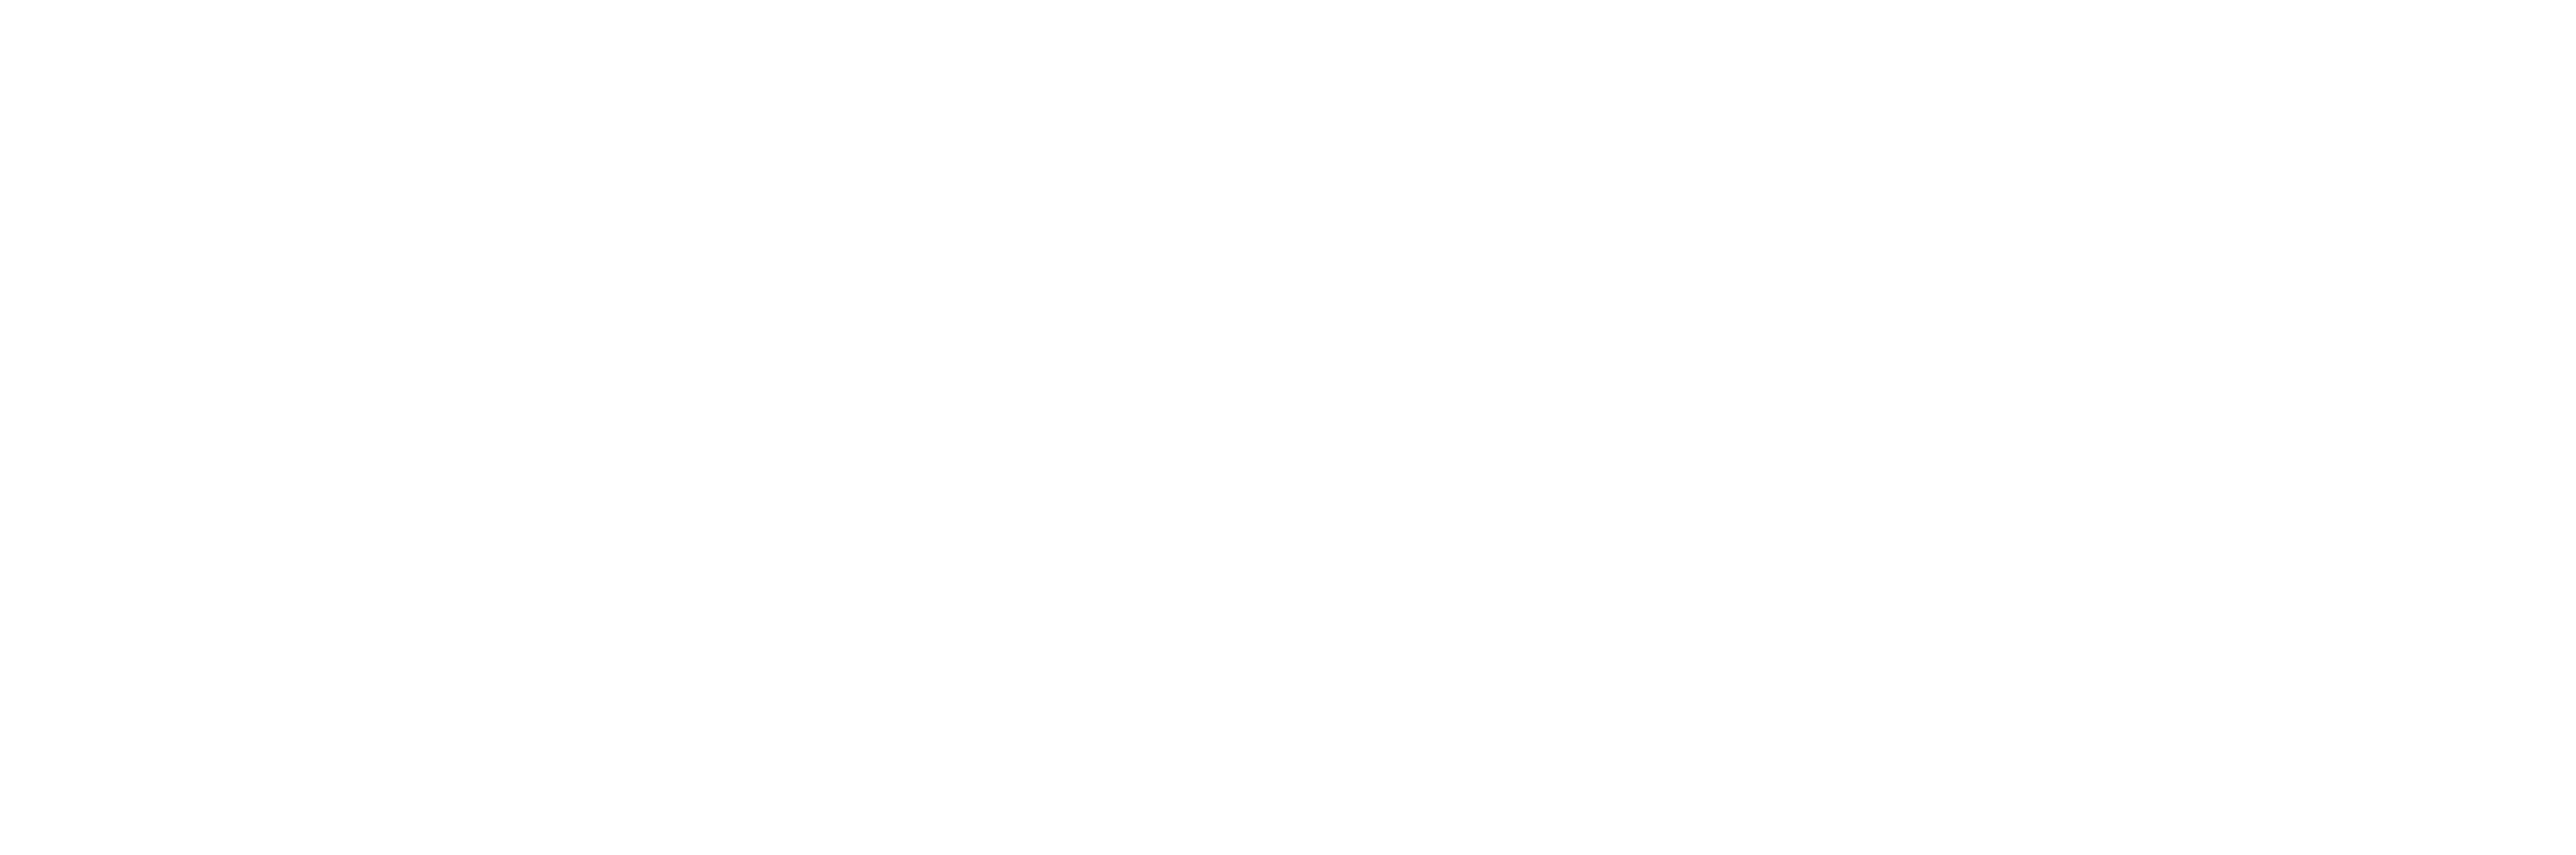 ff-sports-pour-tous